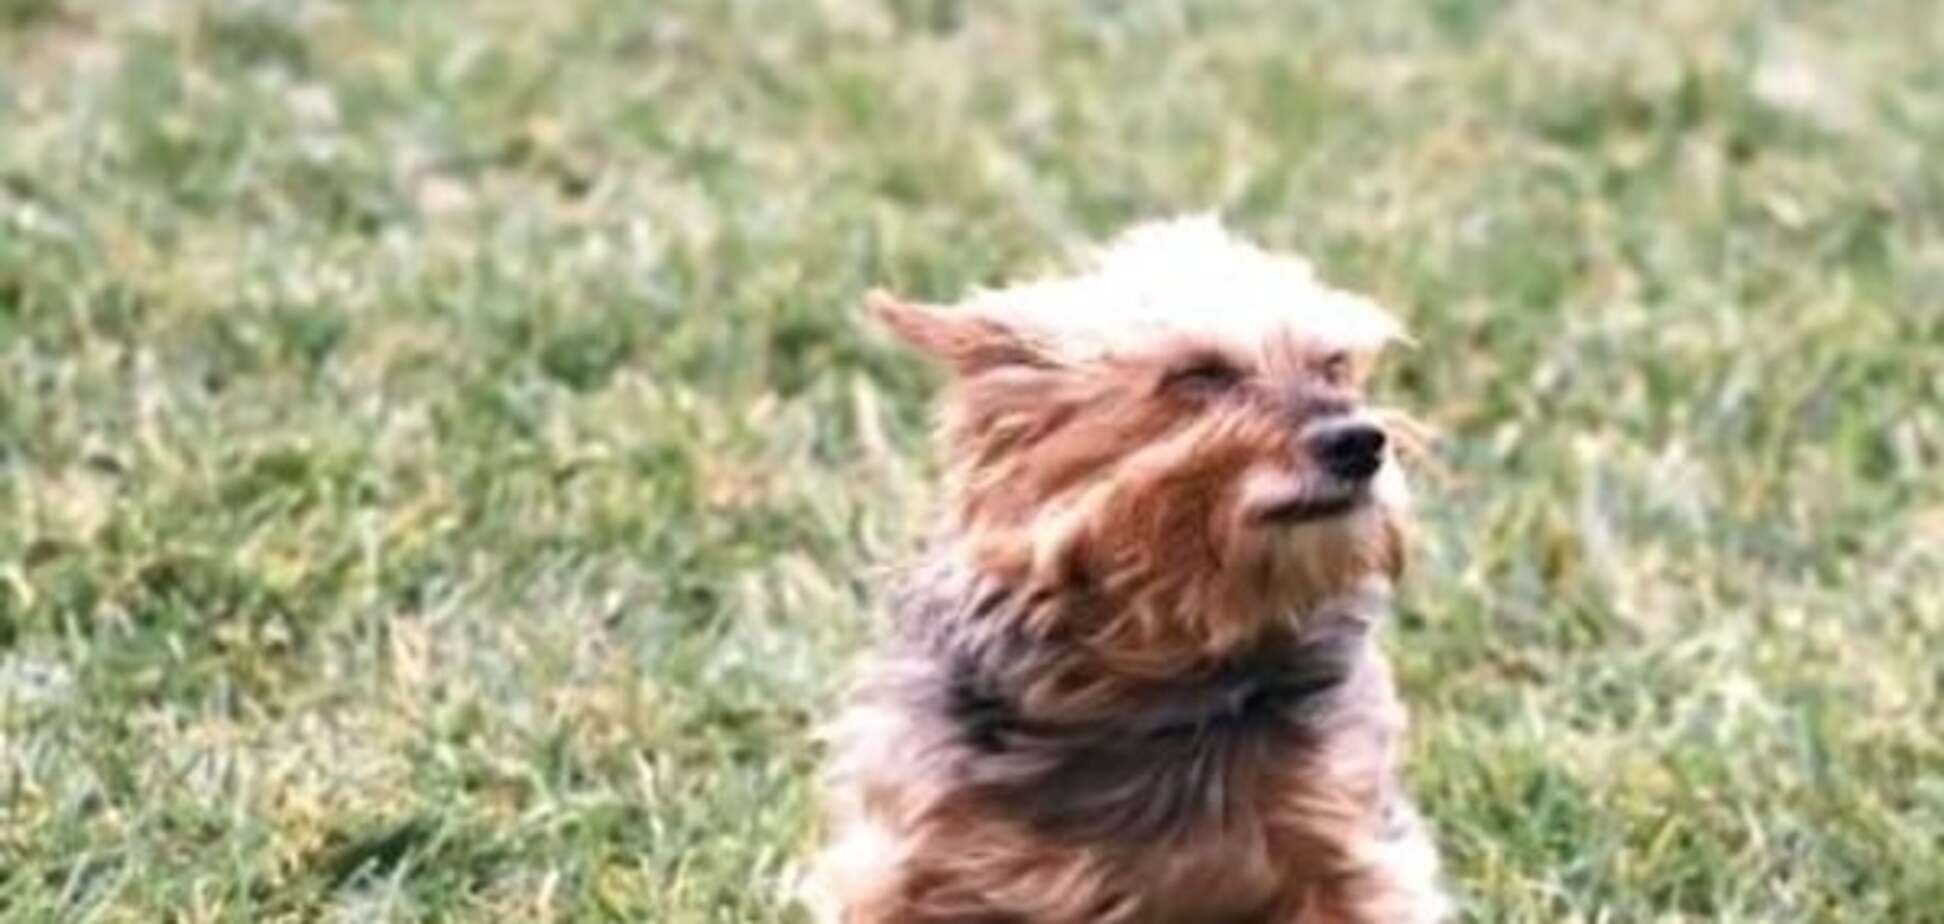 Віднесені вітром: у мережі показали, як собак 'здувають' машиною для прибирання листя